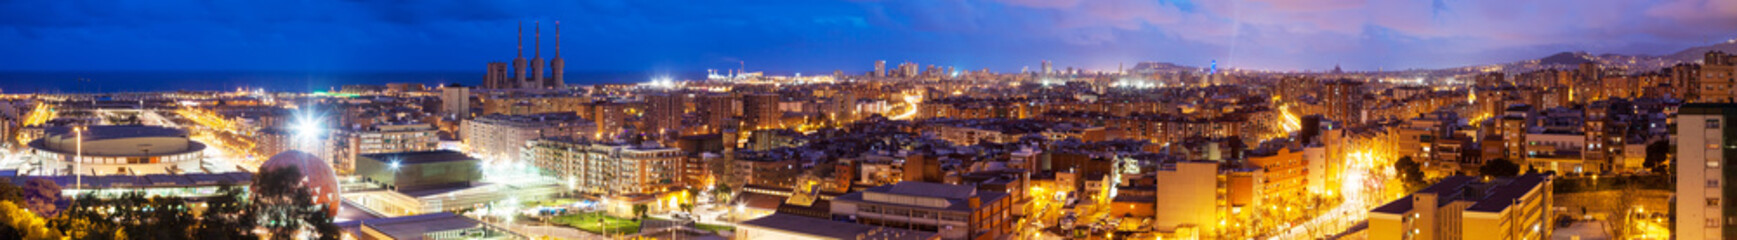 Panoramic night view of Badalona and Barcelona